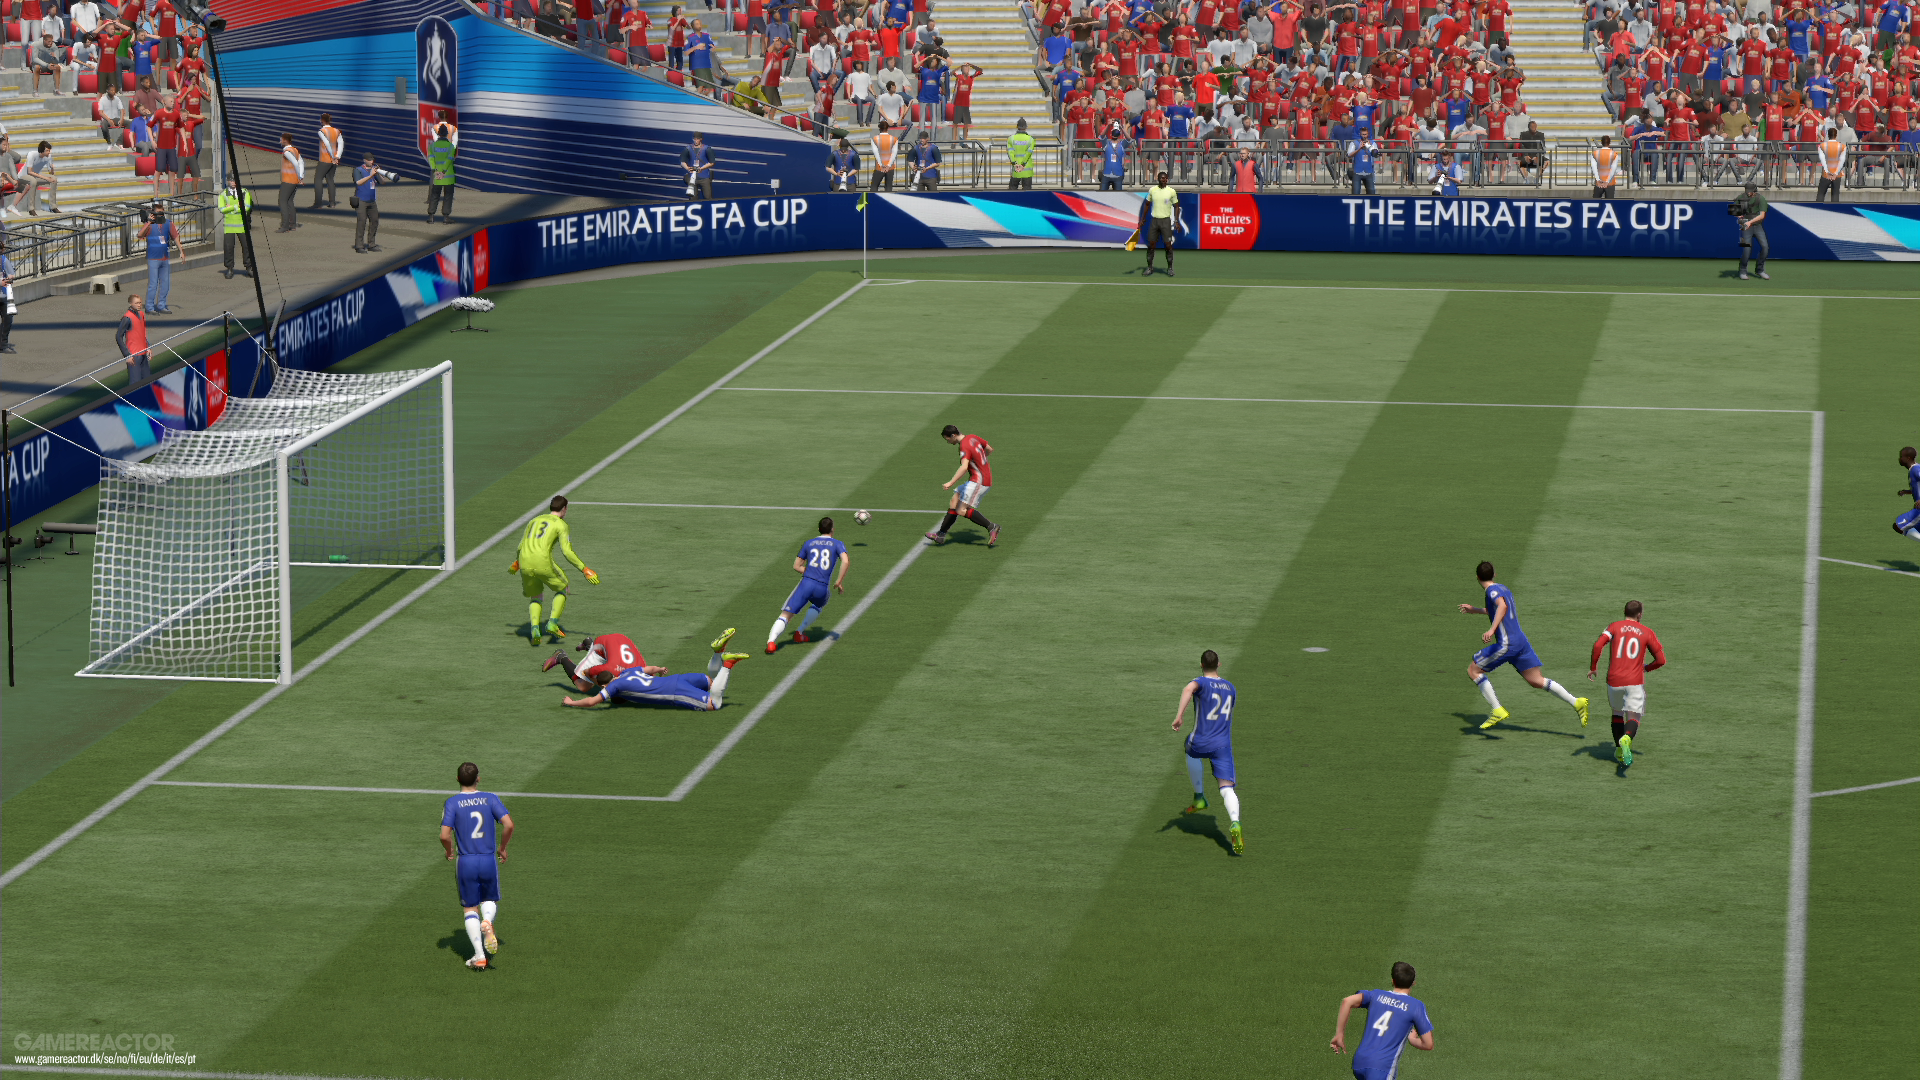 FIFA 17: Guía cómo jugar mejor - atacar y defender